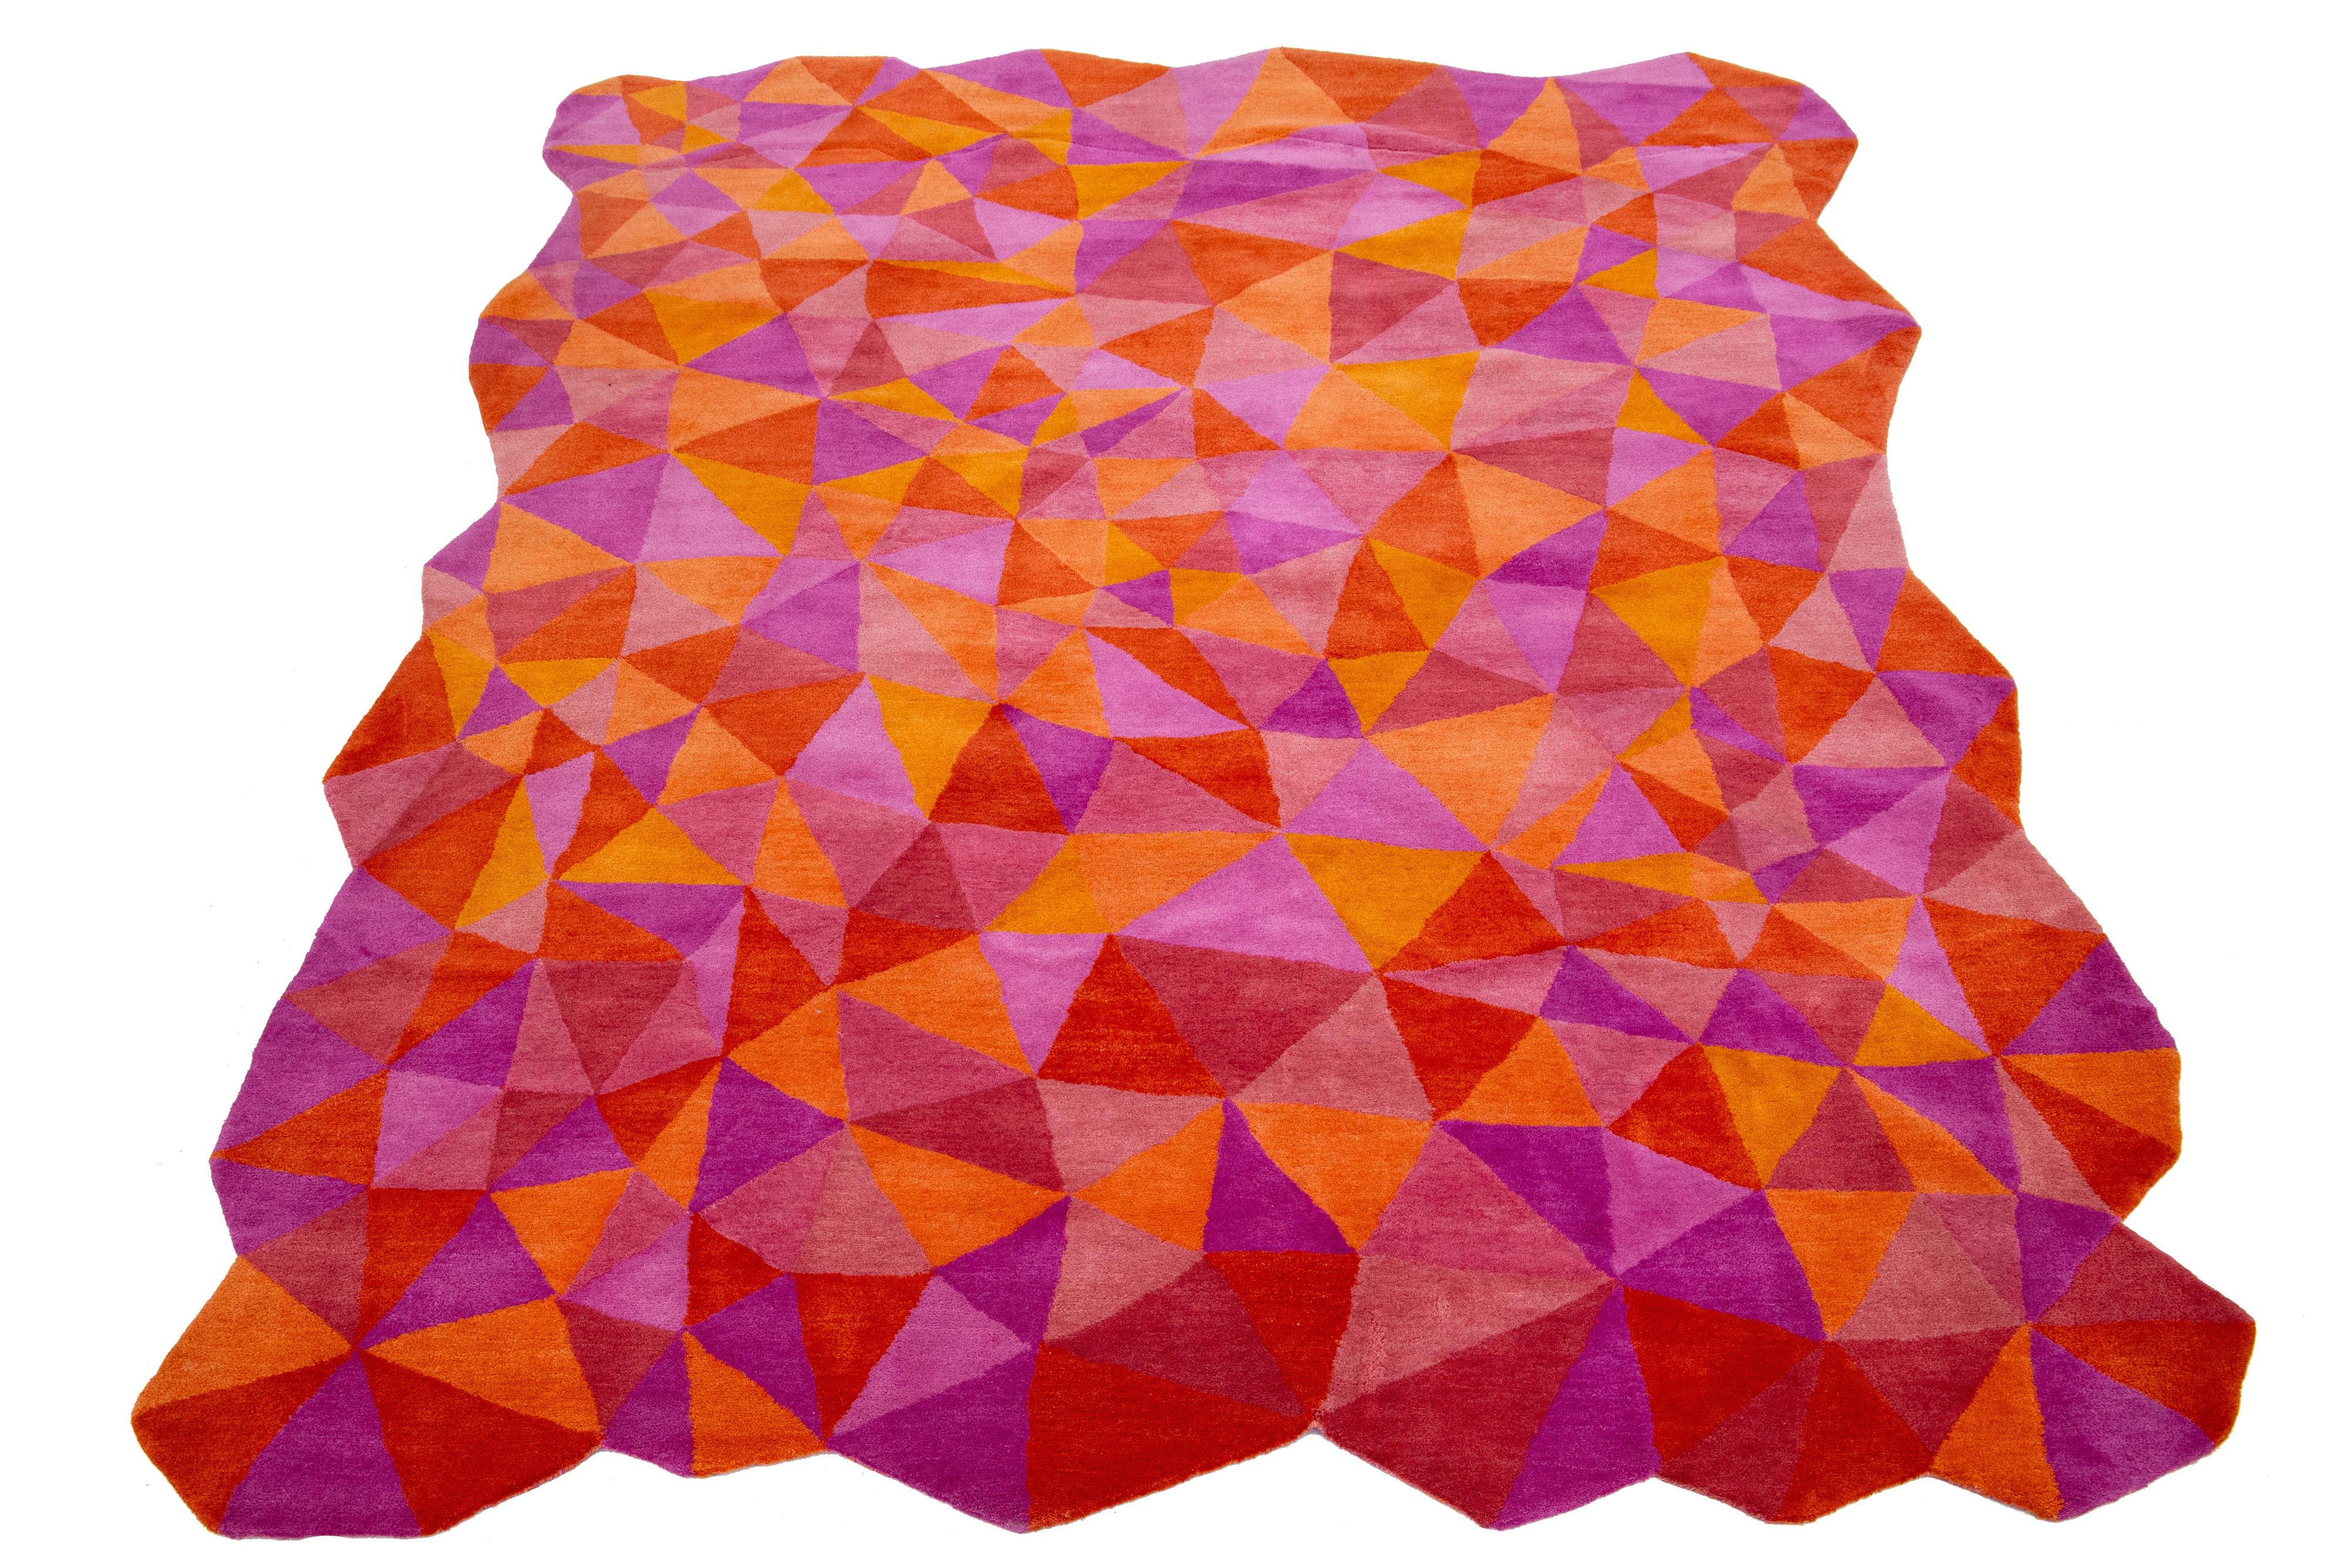 Dieser wunderschöne, moderne, handgetuftete Wollteppich ist Teil unserer Laura Gottwald for Apadana Collection'S und zeigt orange, lila, pink und rote Felder. Dieses Fantasia-Design: Unser einziges Design, das sich nicht wiederholt, ist eine